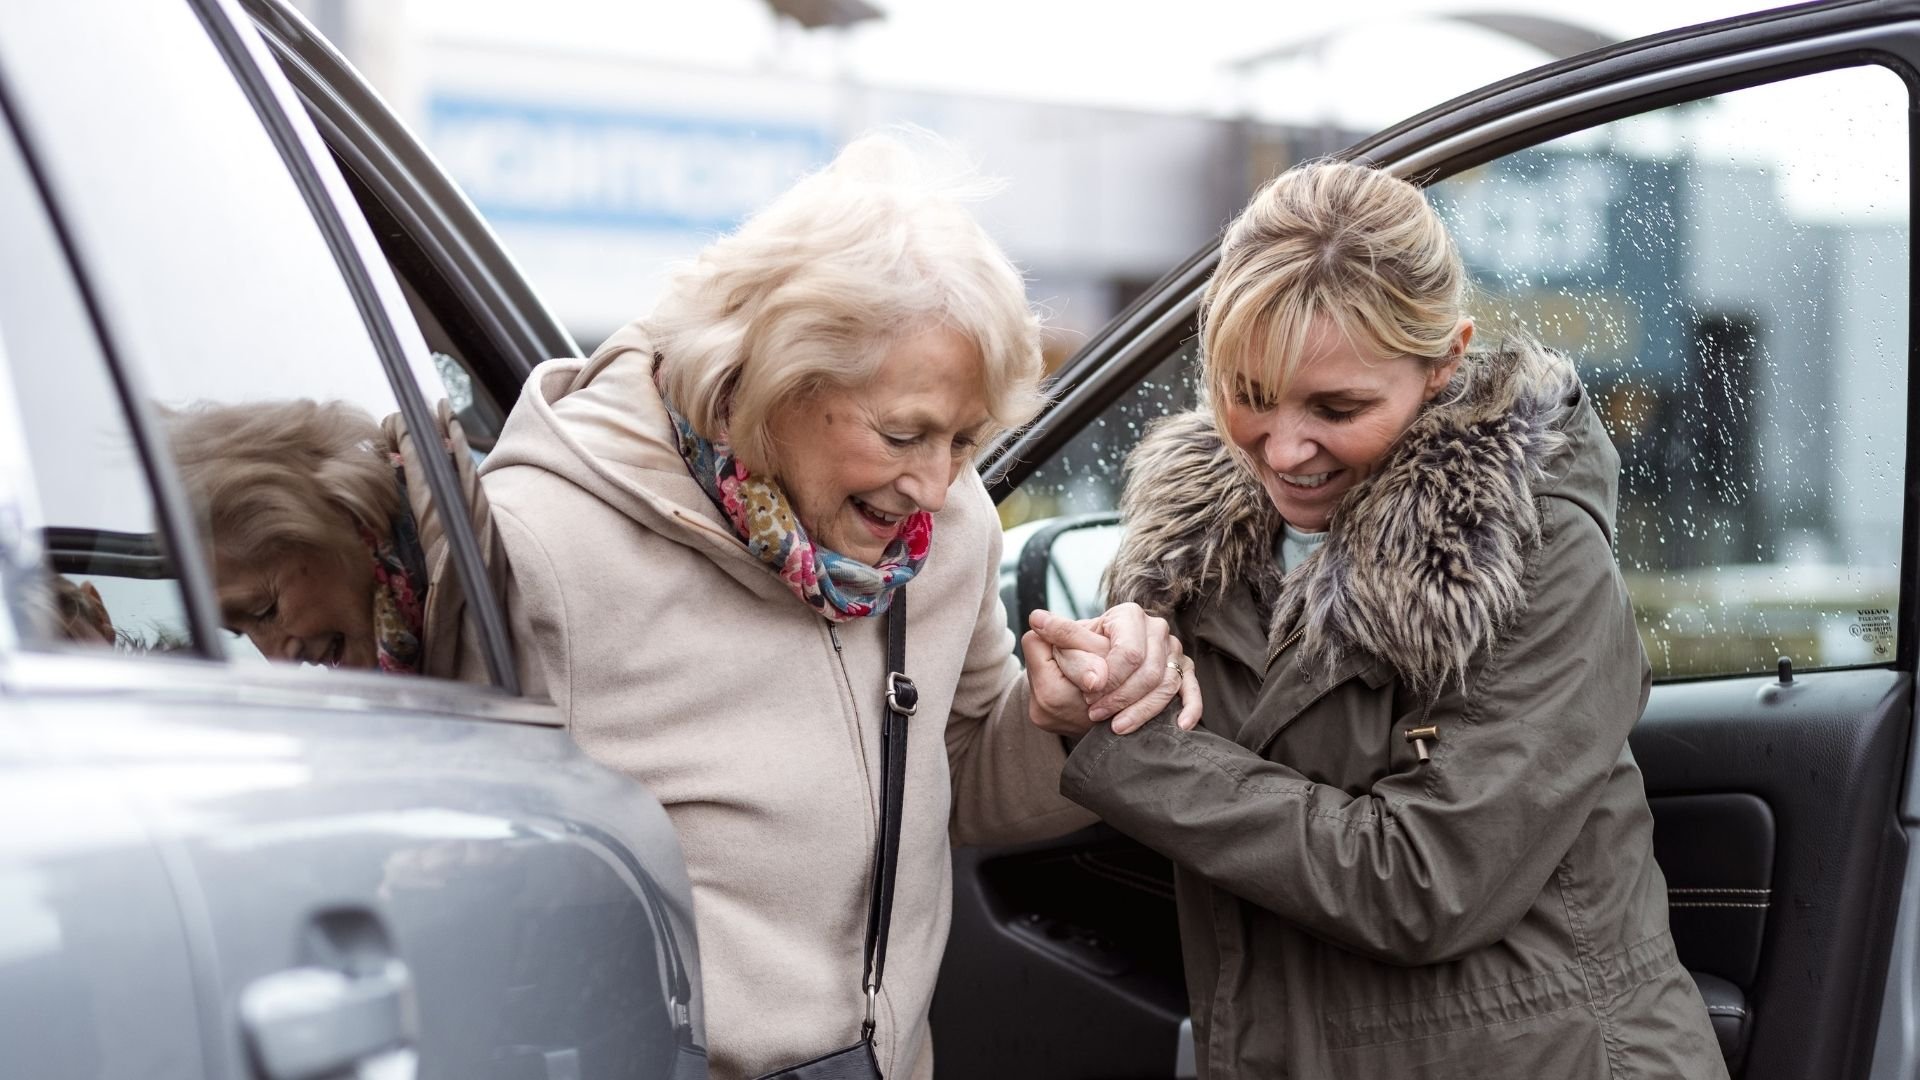 helpper helpt oudere vrouw uit de auto